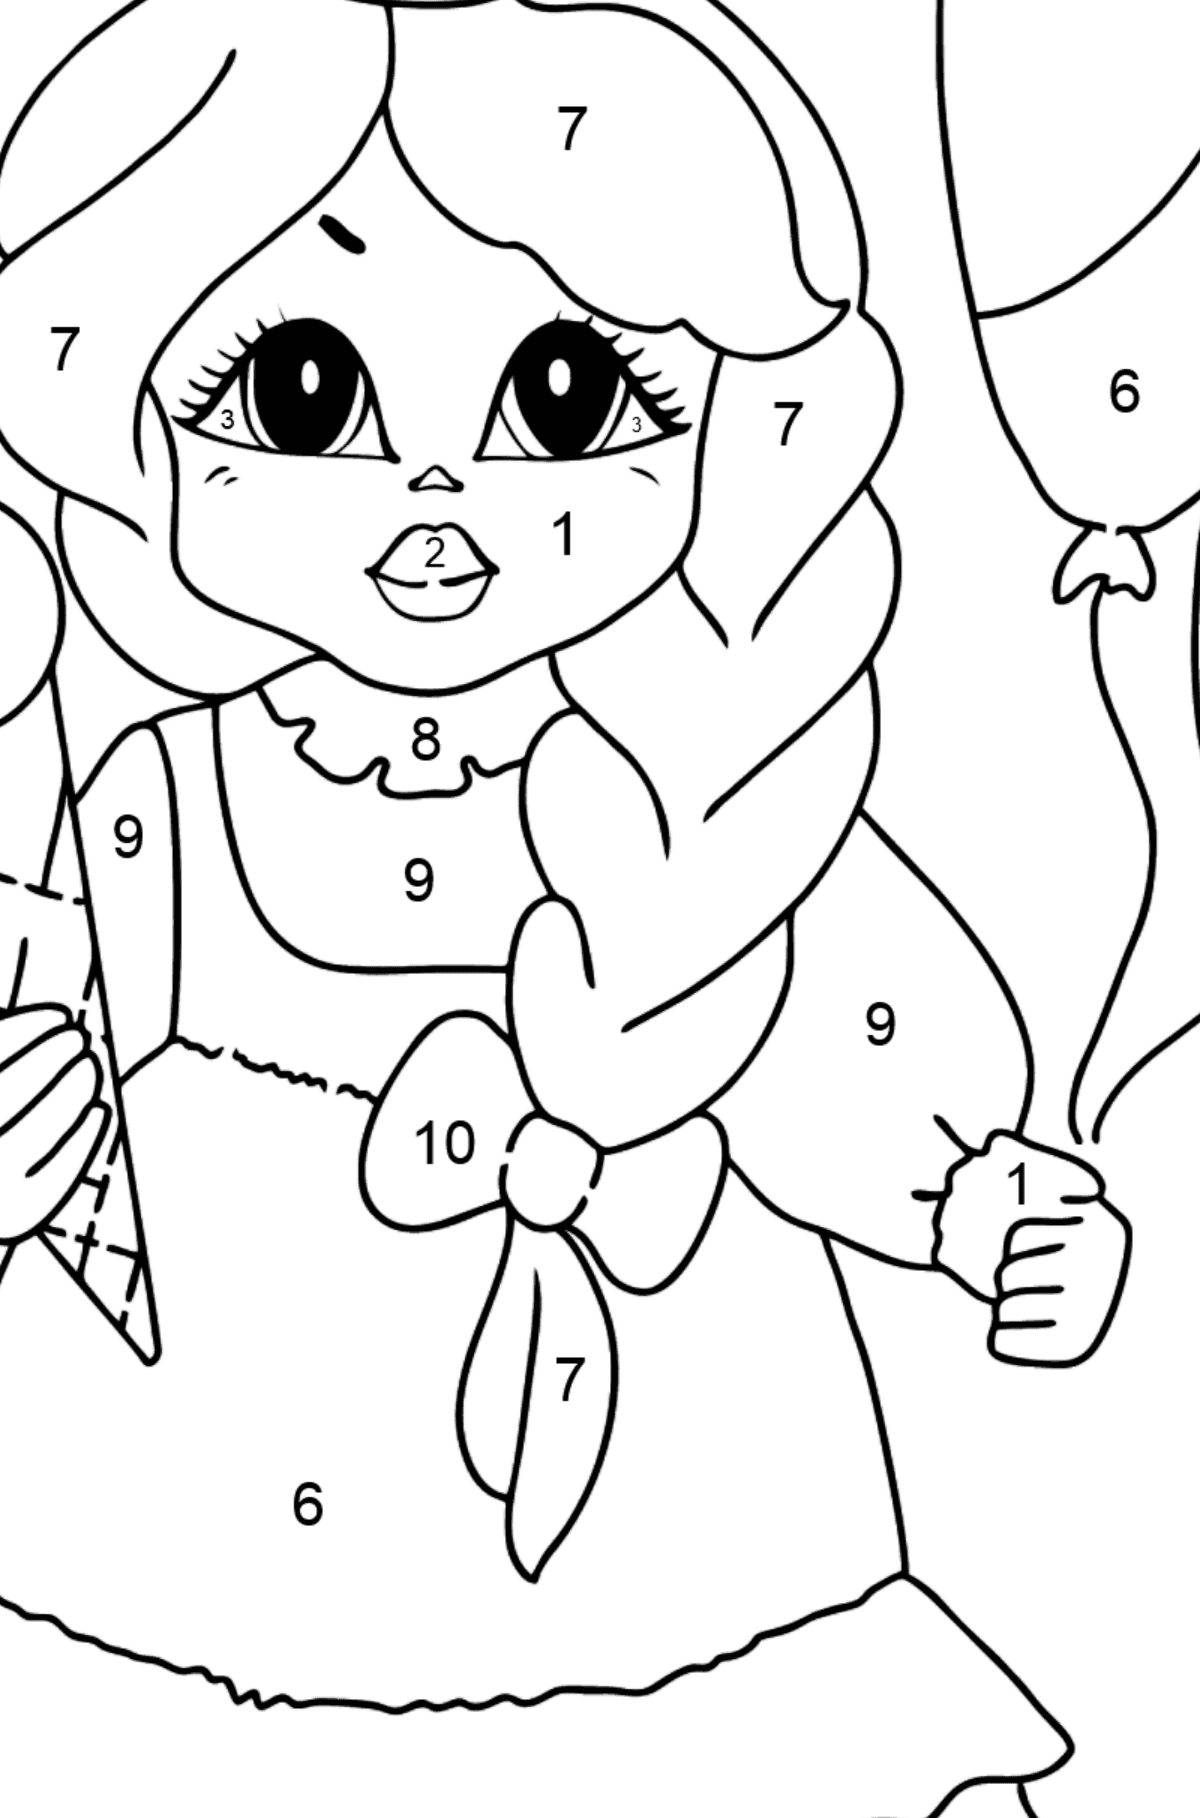 Ausmalbild - Eine Prinzessin mit Eiscreme - Malen nach Zahlen für Kinder